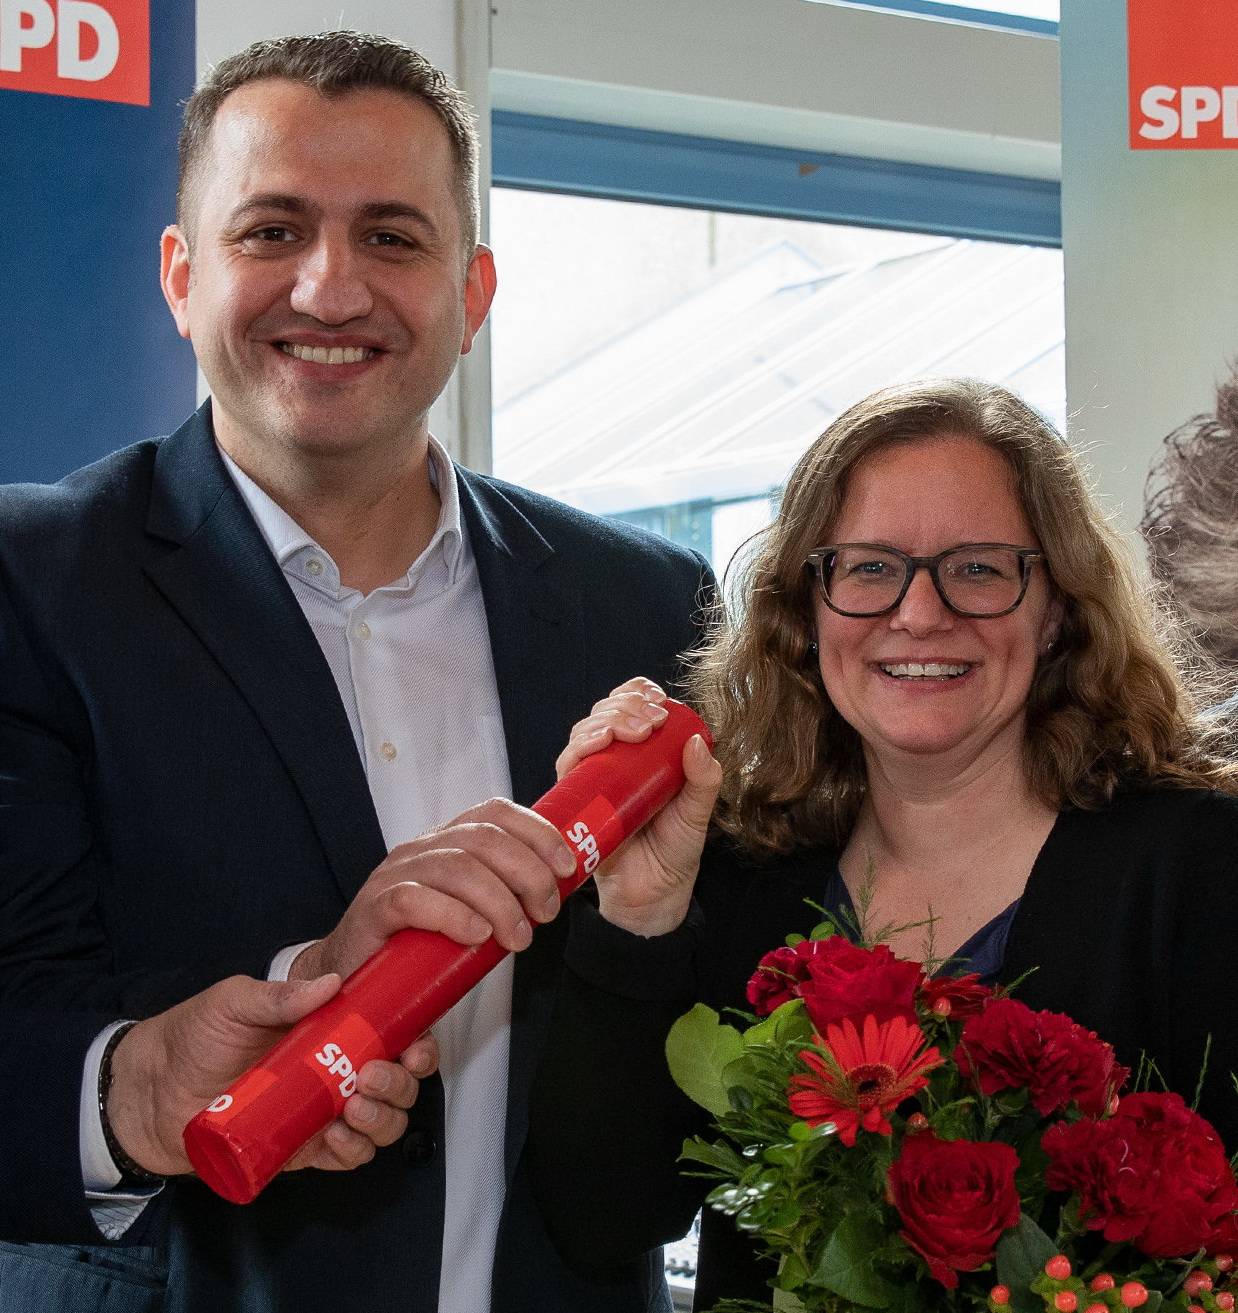 SPD erneuert Kritik an OB-Kandidat Schneidewind